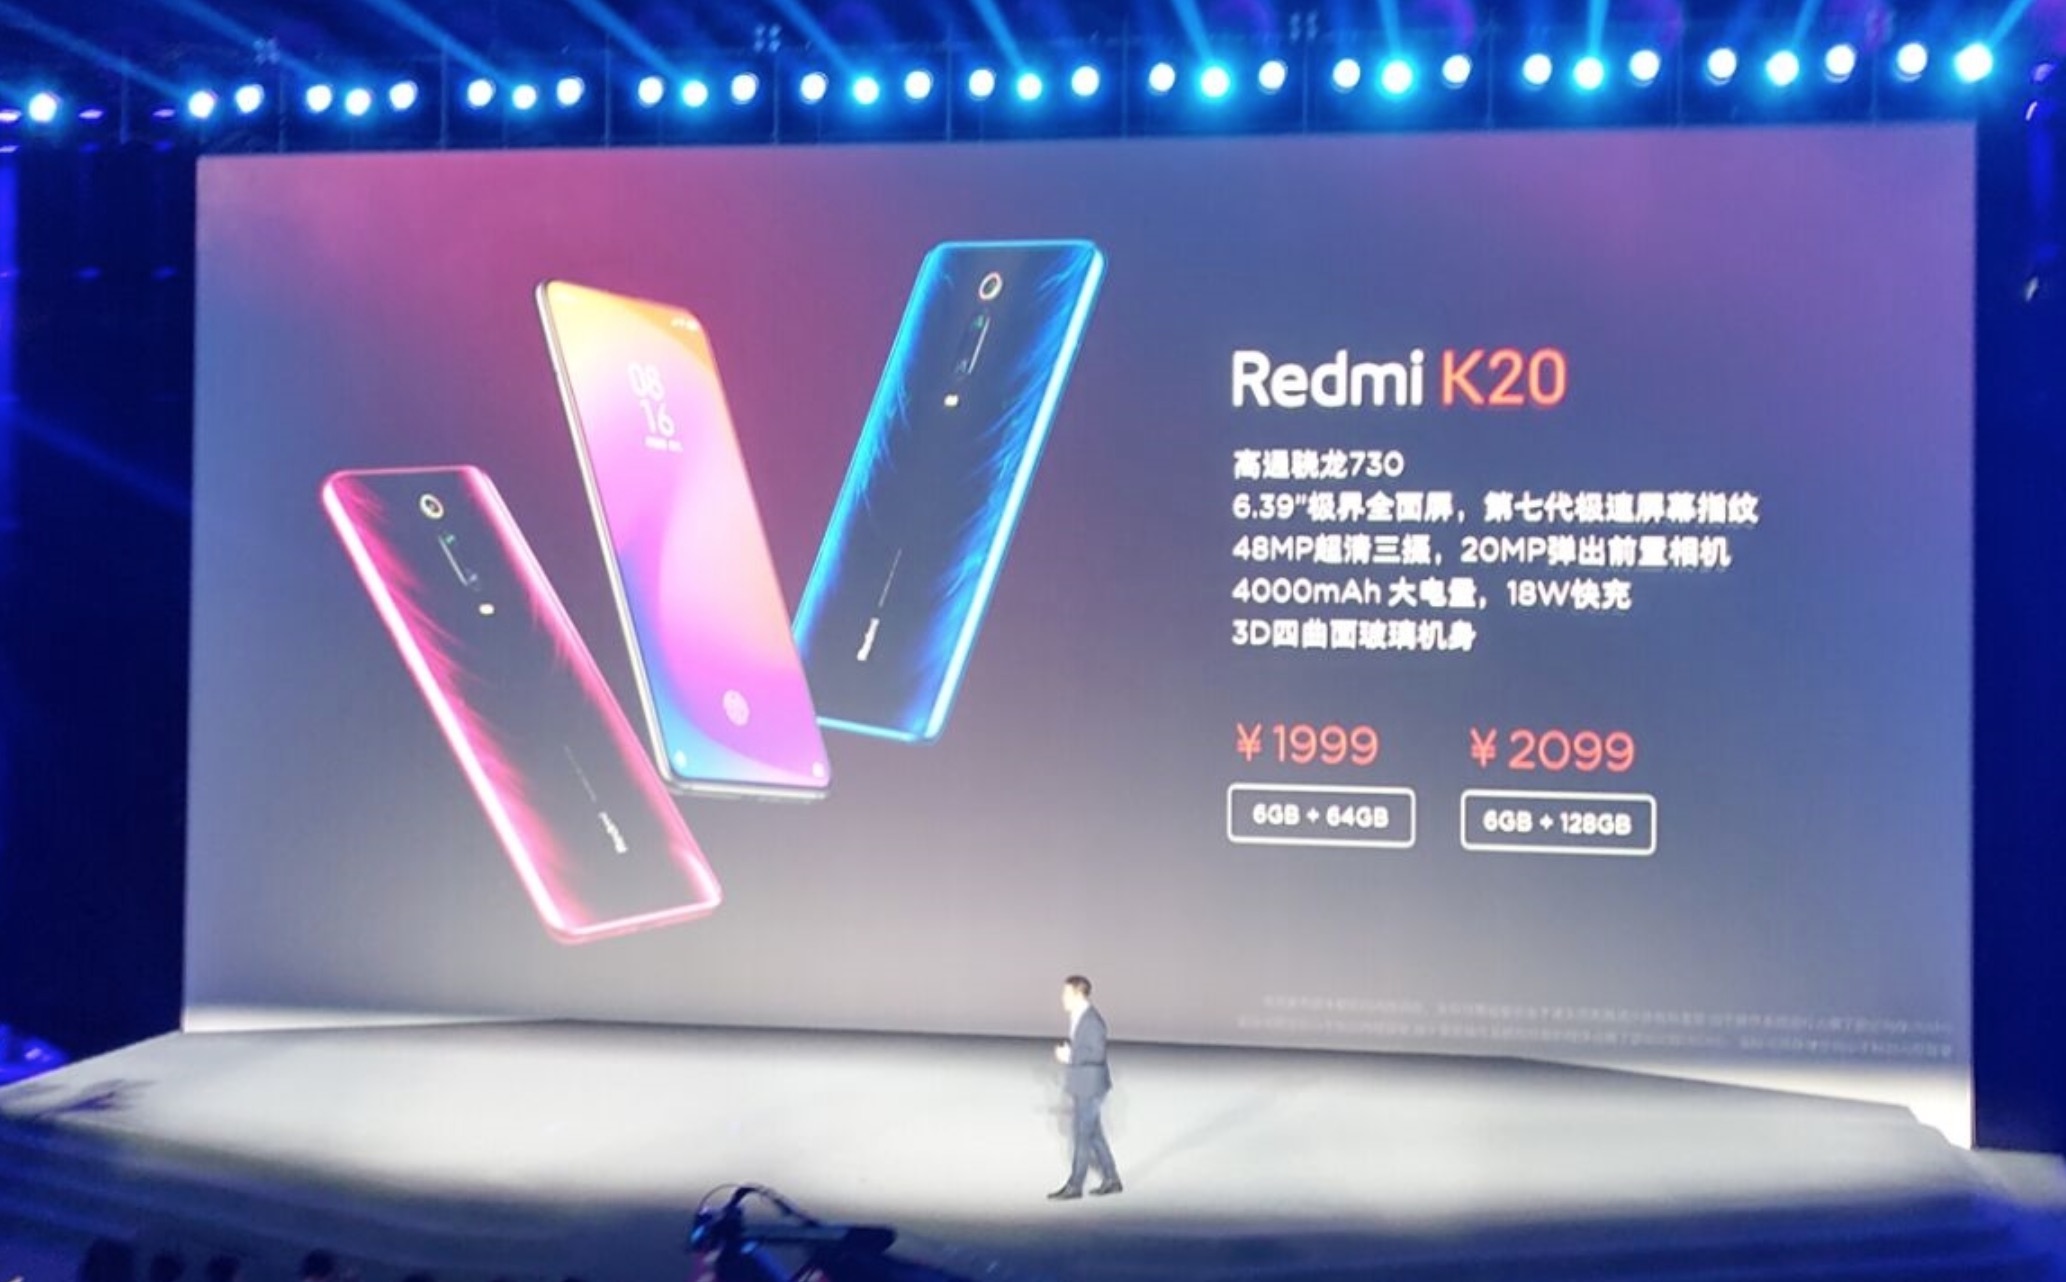 Redmi K20/K20 Pro chính thức trình làng:
Snapdragon 730/855, vân tay trong màn hình, camera thò thụt,
giá rất rẻ